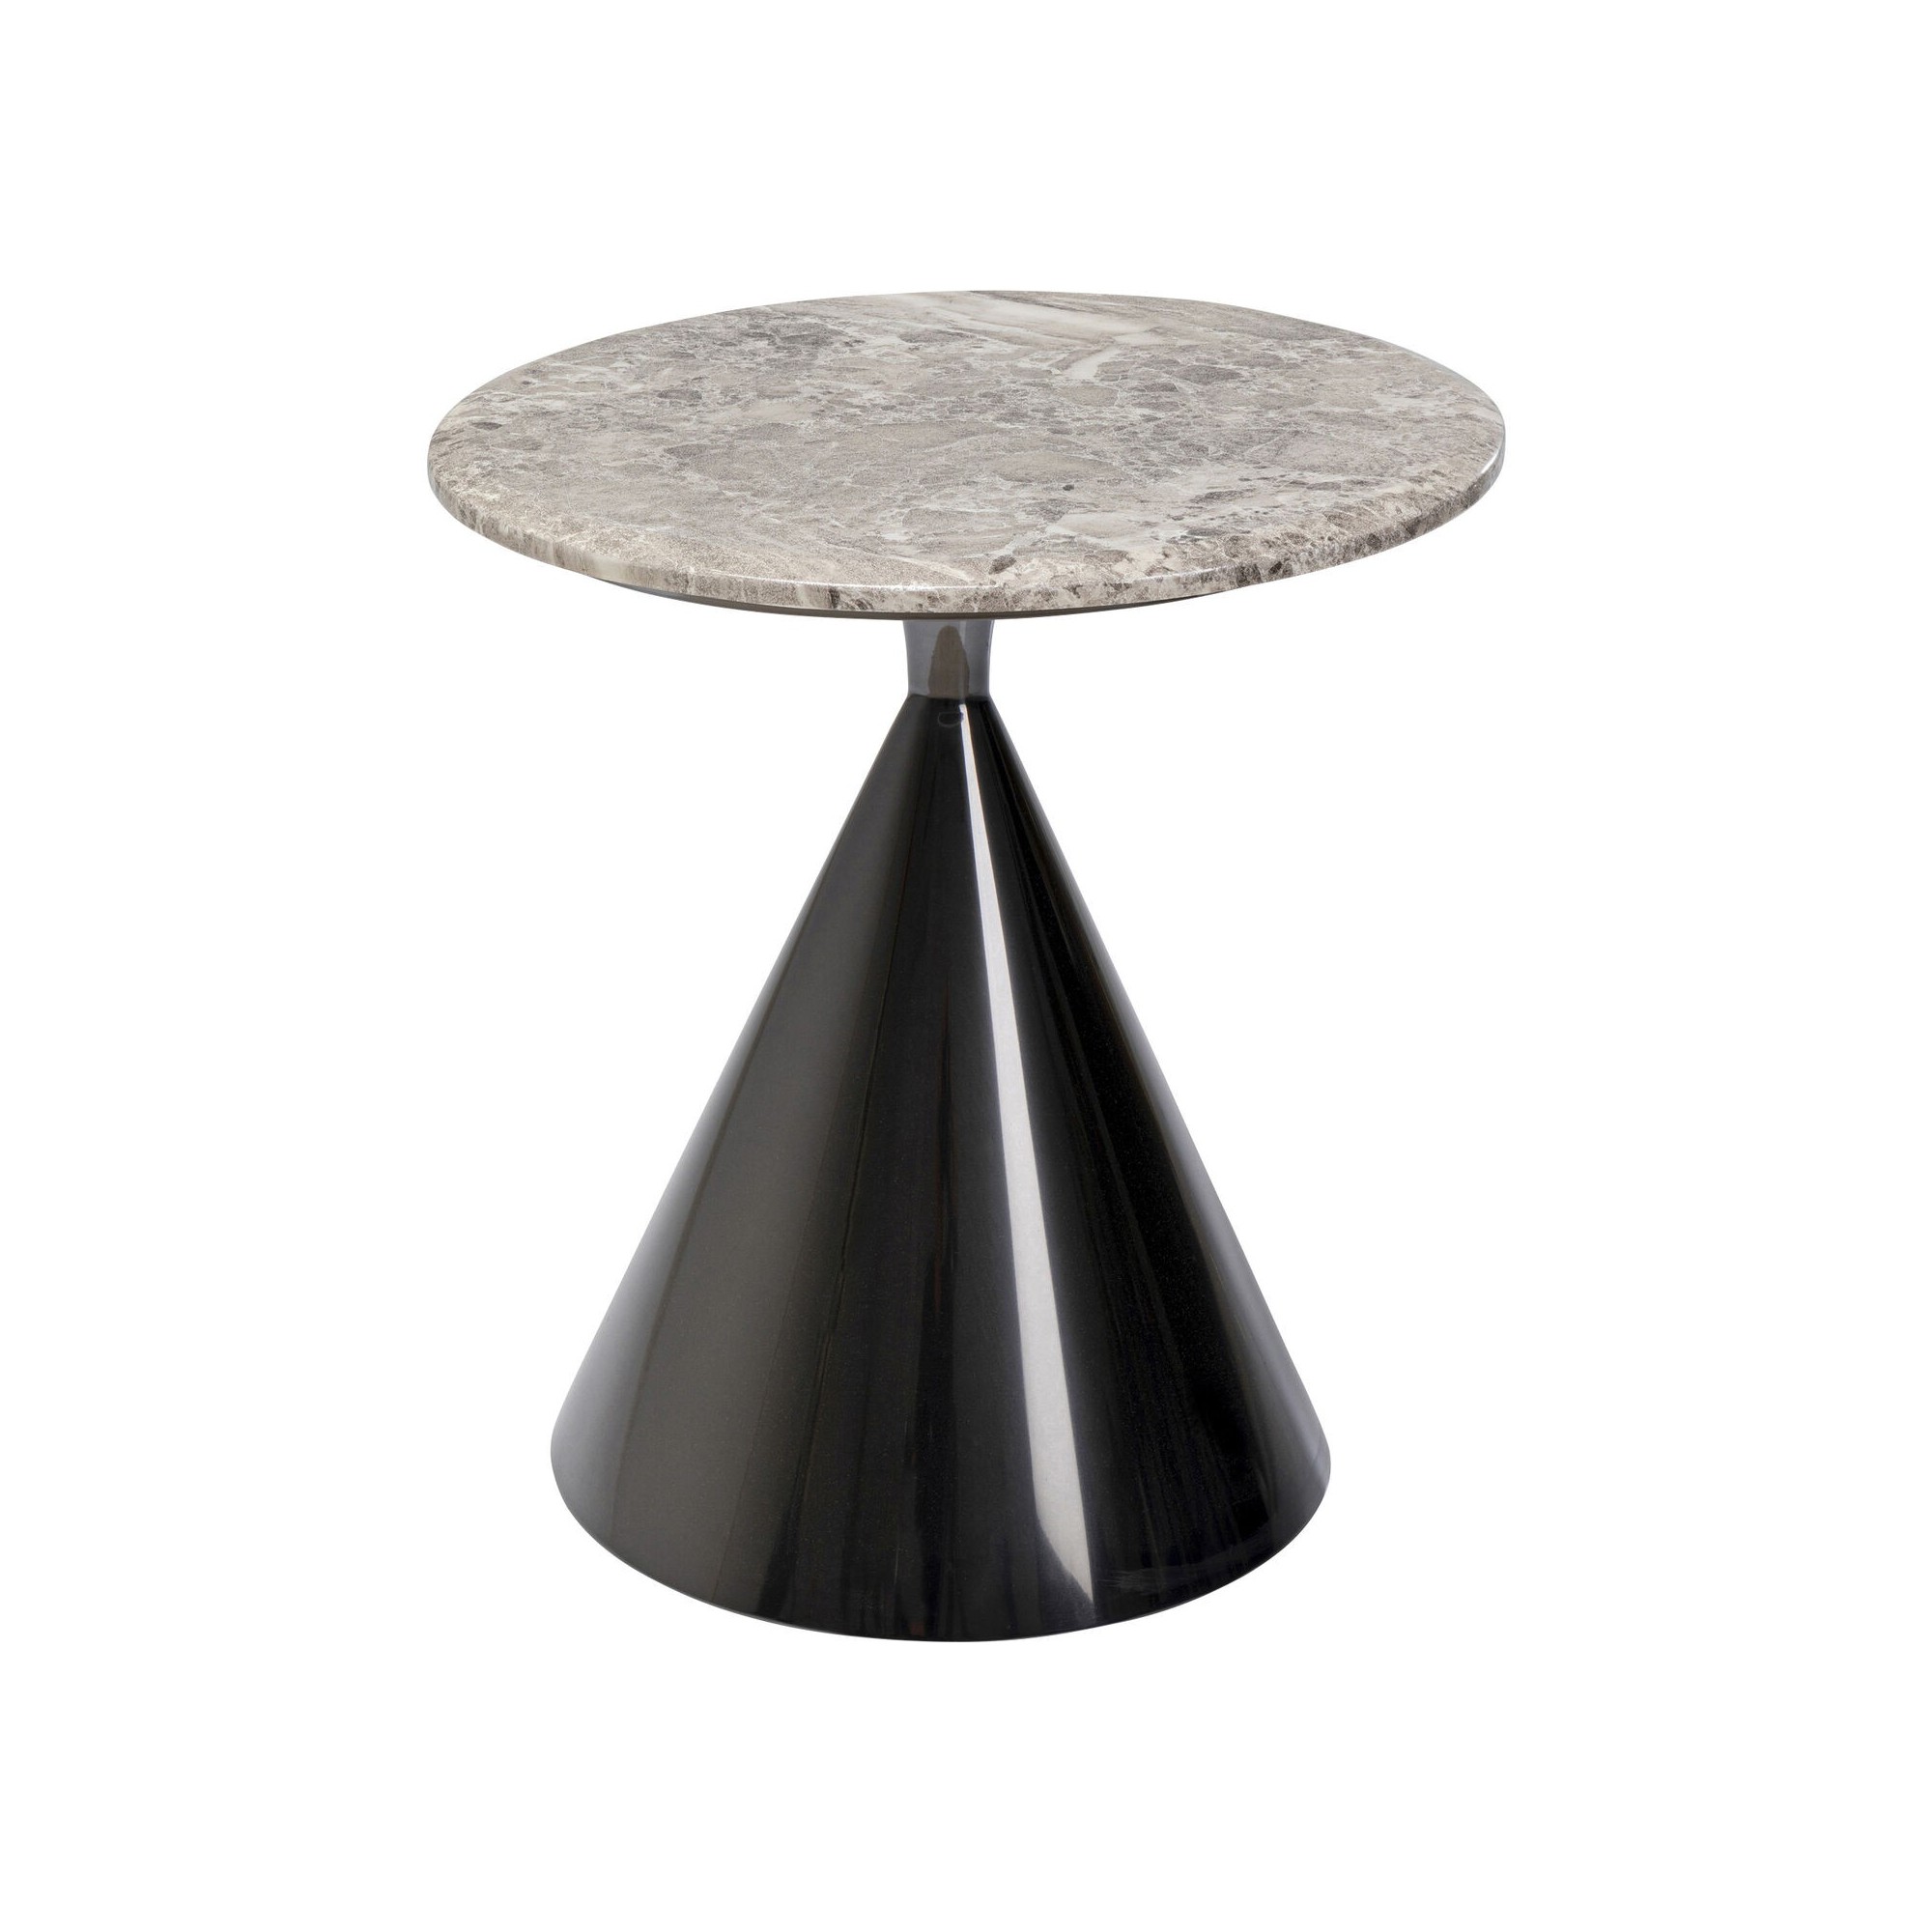 Table d'appoint Rita noire Kare Design